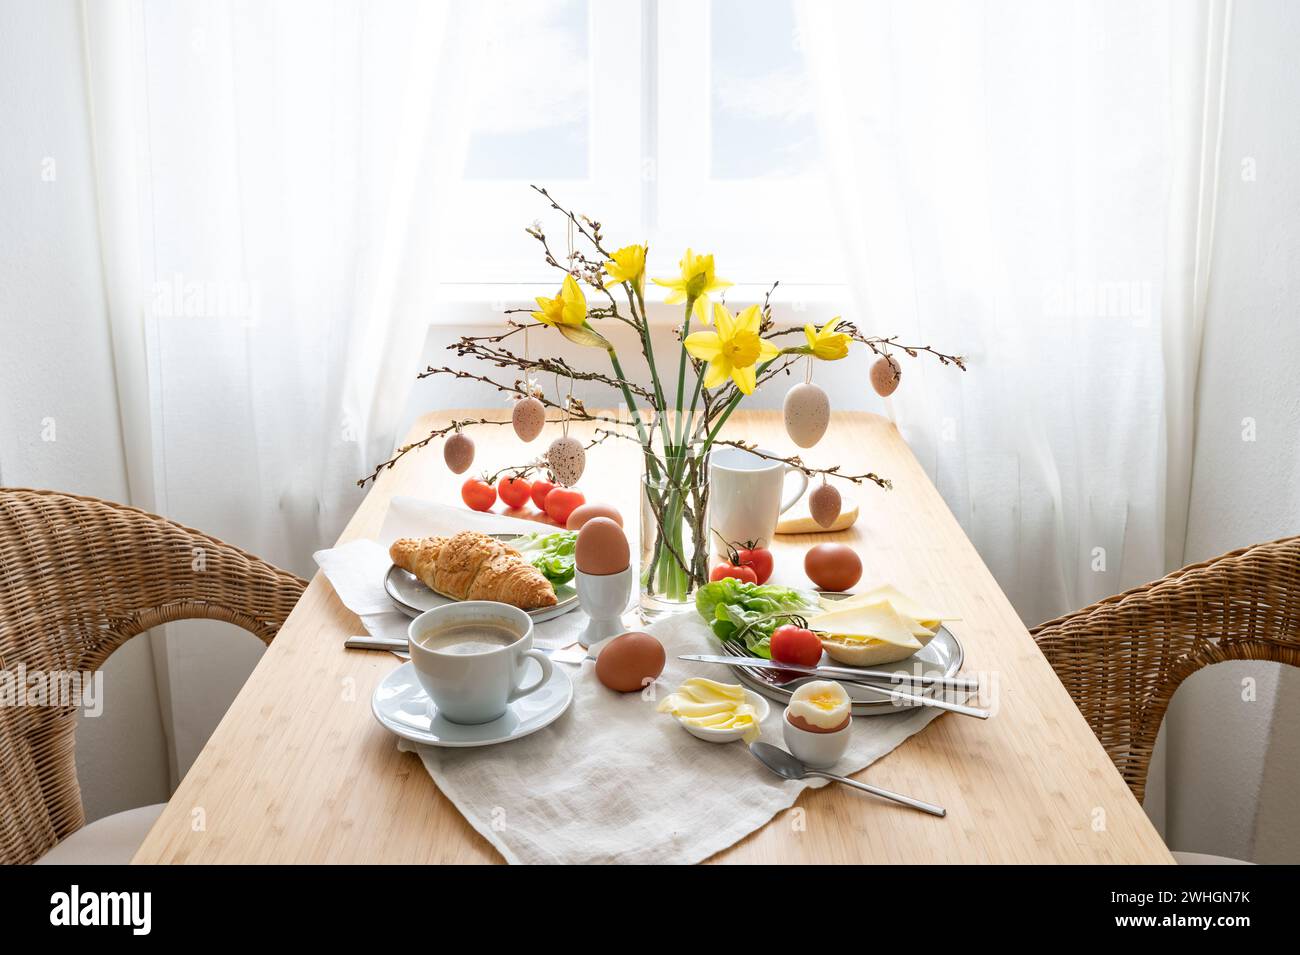 Frühstück für zwei Personen mit Narzissen und Osterdekoration auf einem Holztisch am Fenster, Kopierraum, ausgewählter Fokus Stockfoto